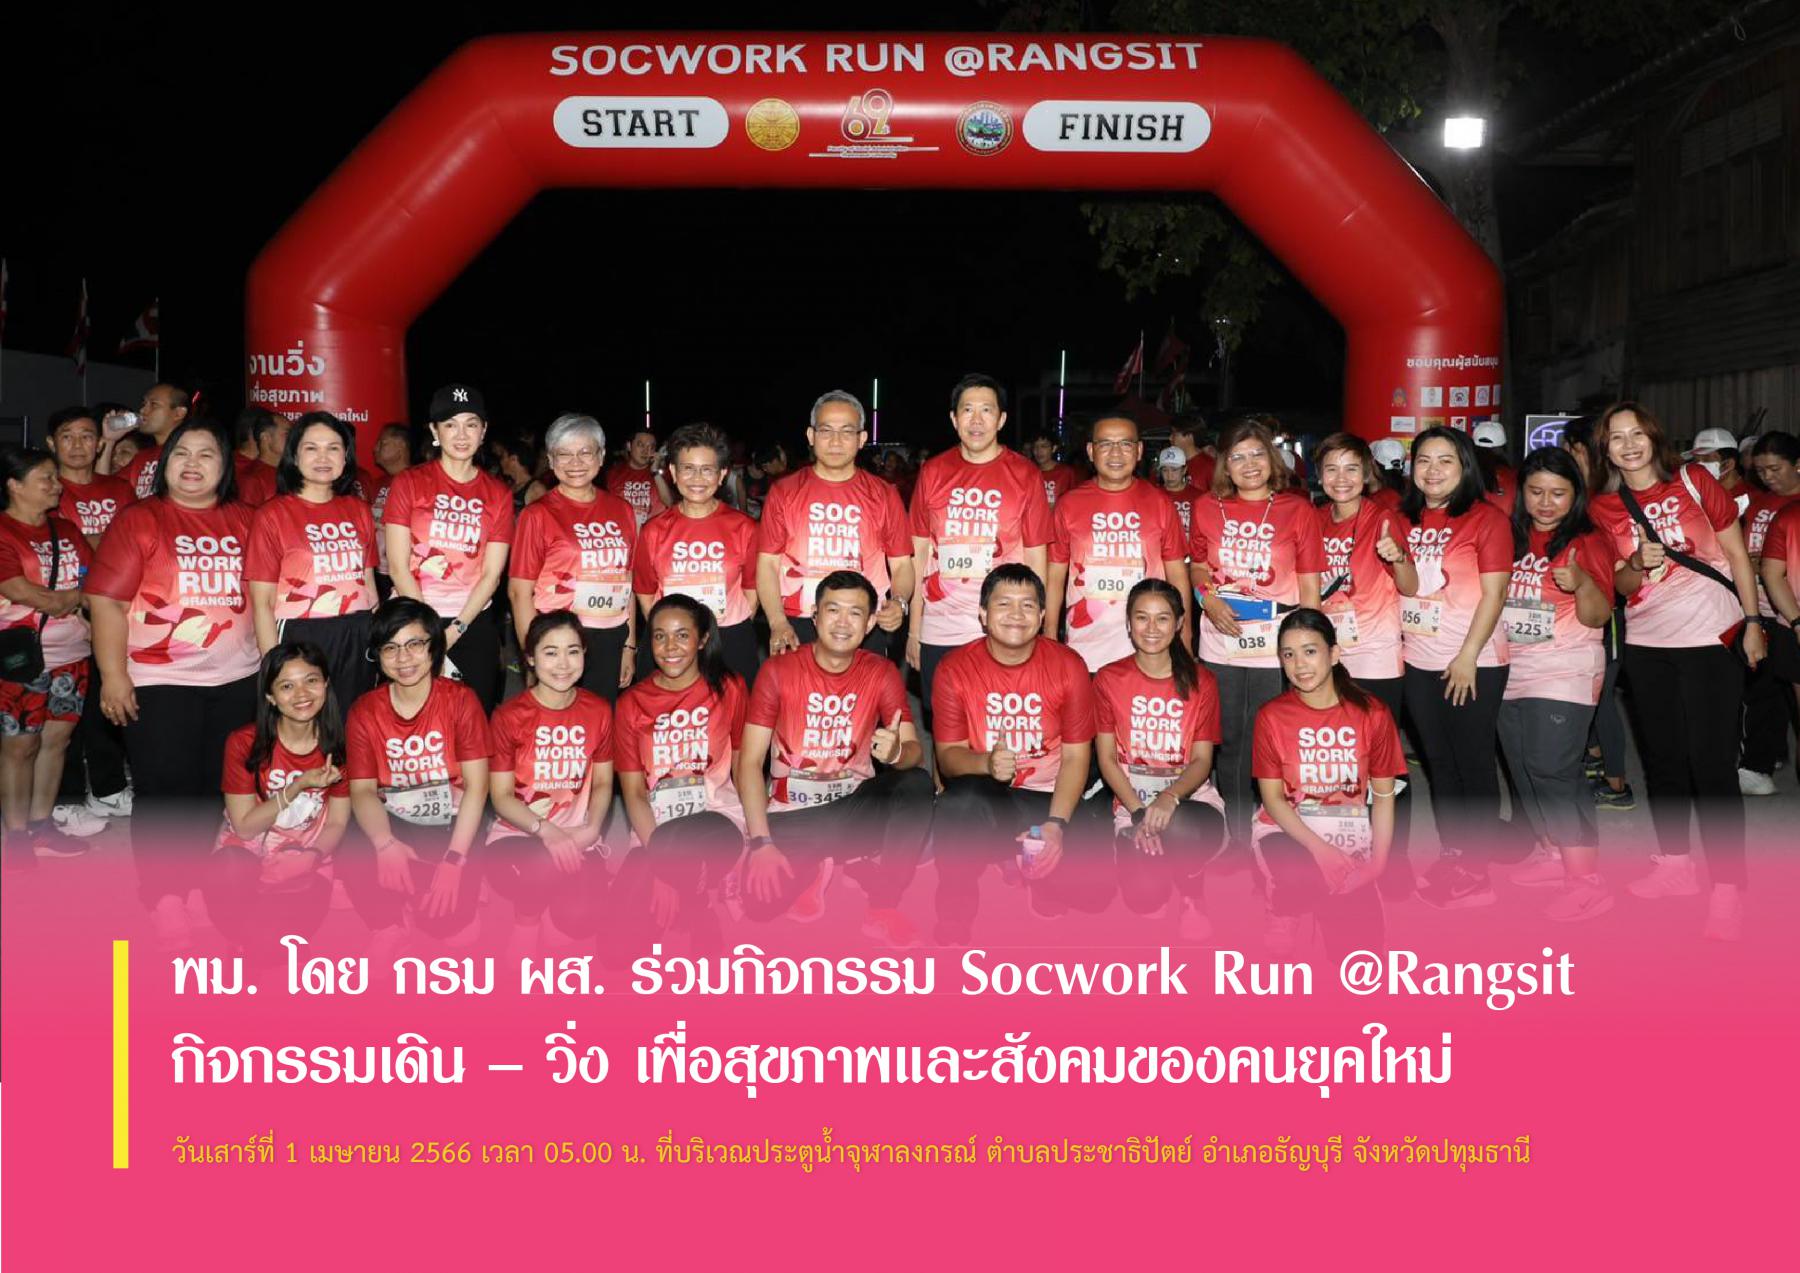 พม. โดย กรม ผส. ร่วมกิจกรรม Socwork Run @Rangsit กิจกรรมเดิน – วิ่ง เพื่อสุขภาพและสังคมของคนยุคใหม่